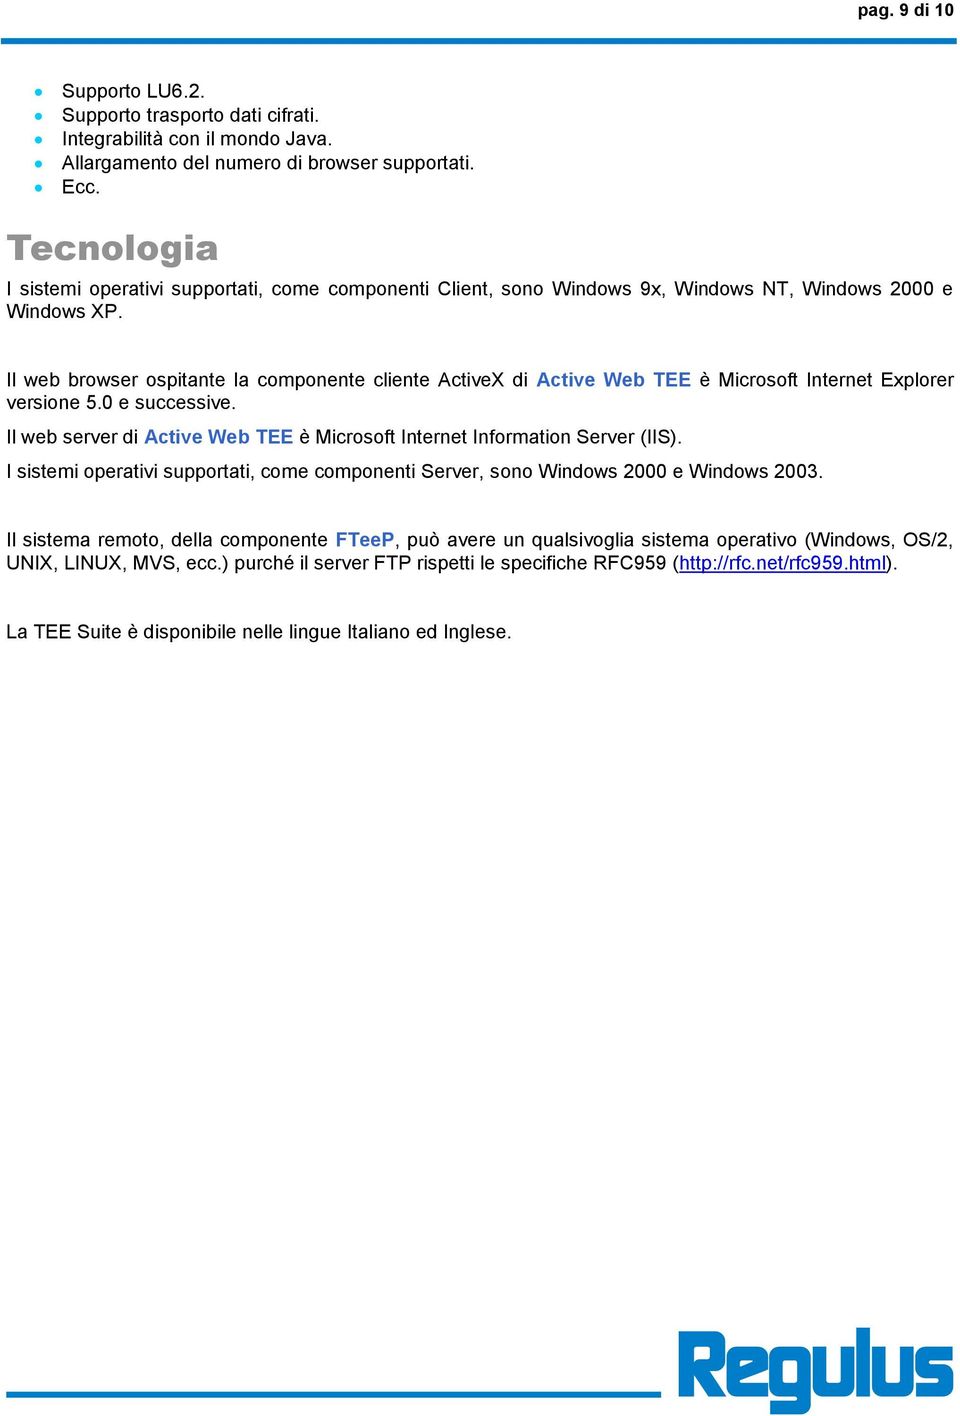 Il web browser ospitante la componente cliente ActiveX di Active Web TEE è Microsoft Internet Explorer versione 5.0 e successive.